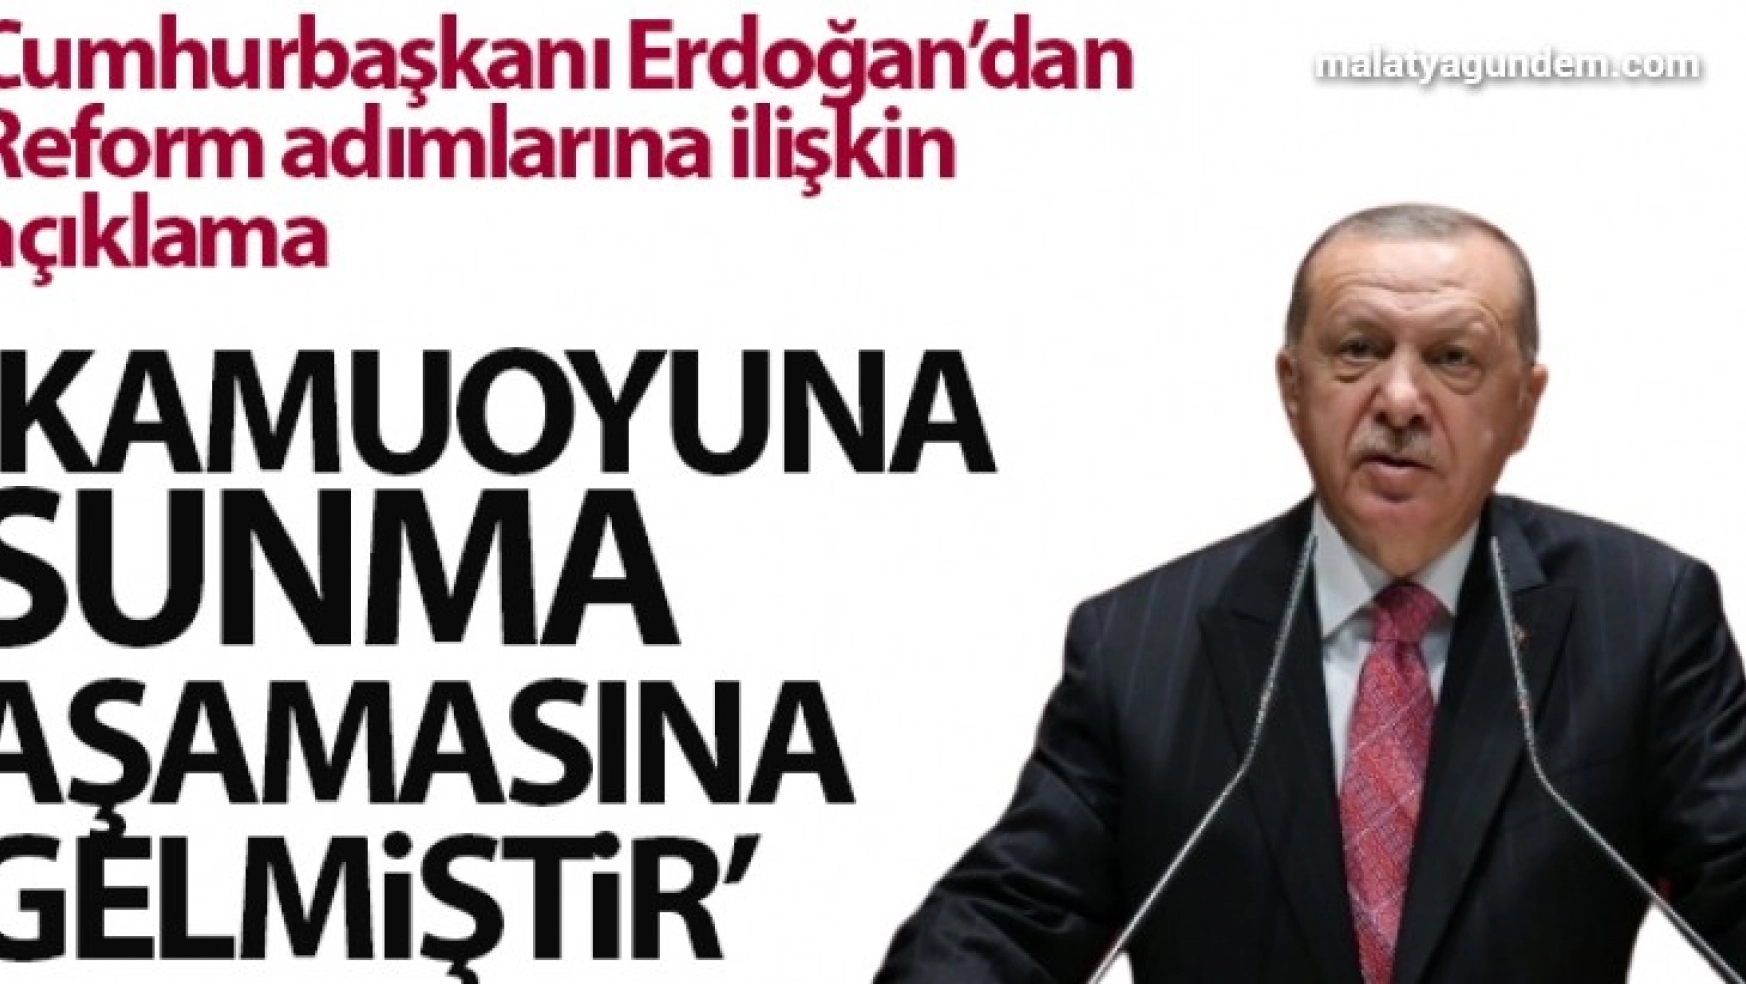 Cumhurbaşkanı Erdoğan: 'Reform adımlarıyla ilgili hazırlıklarımız kamuoyuna sunma aşamasına gelmiştir'